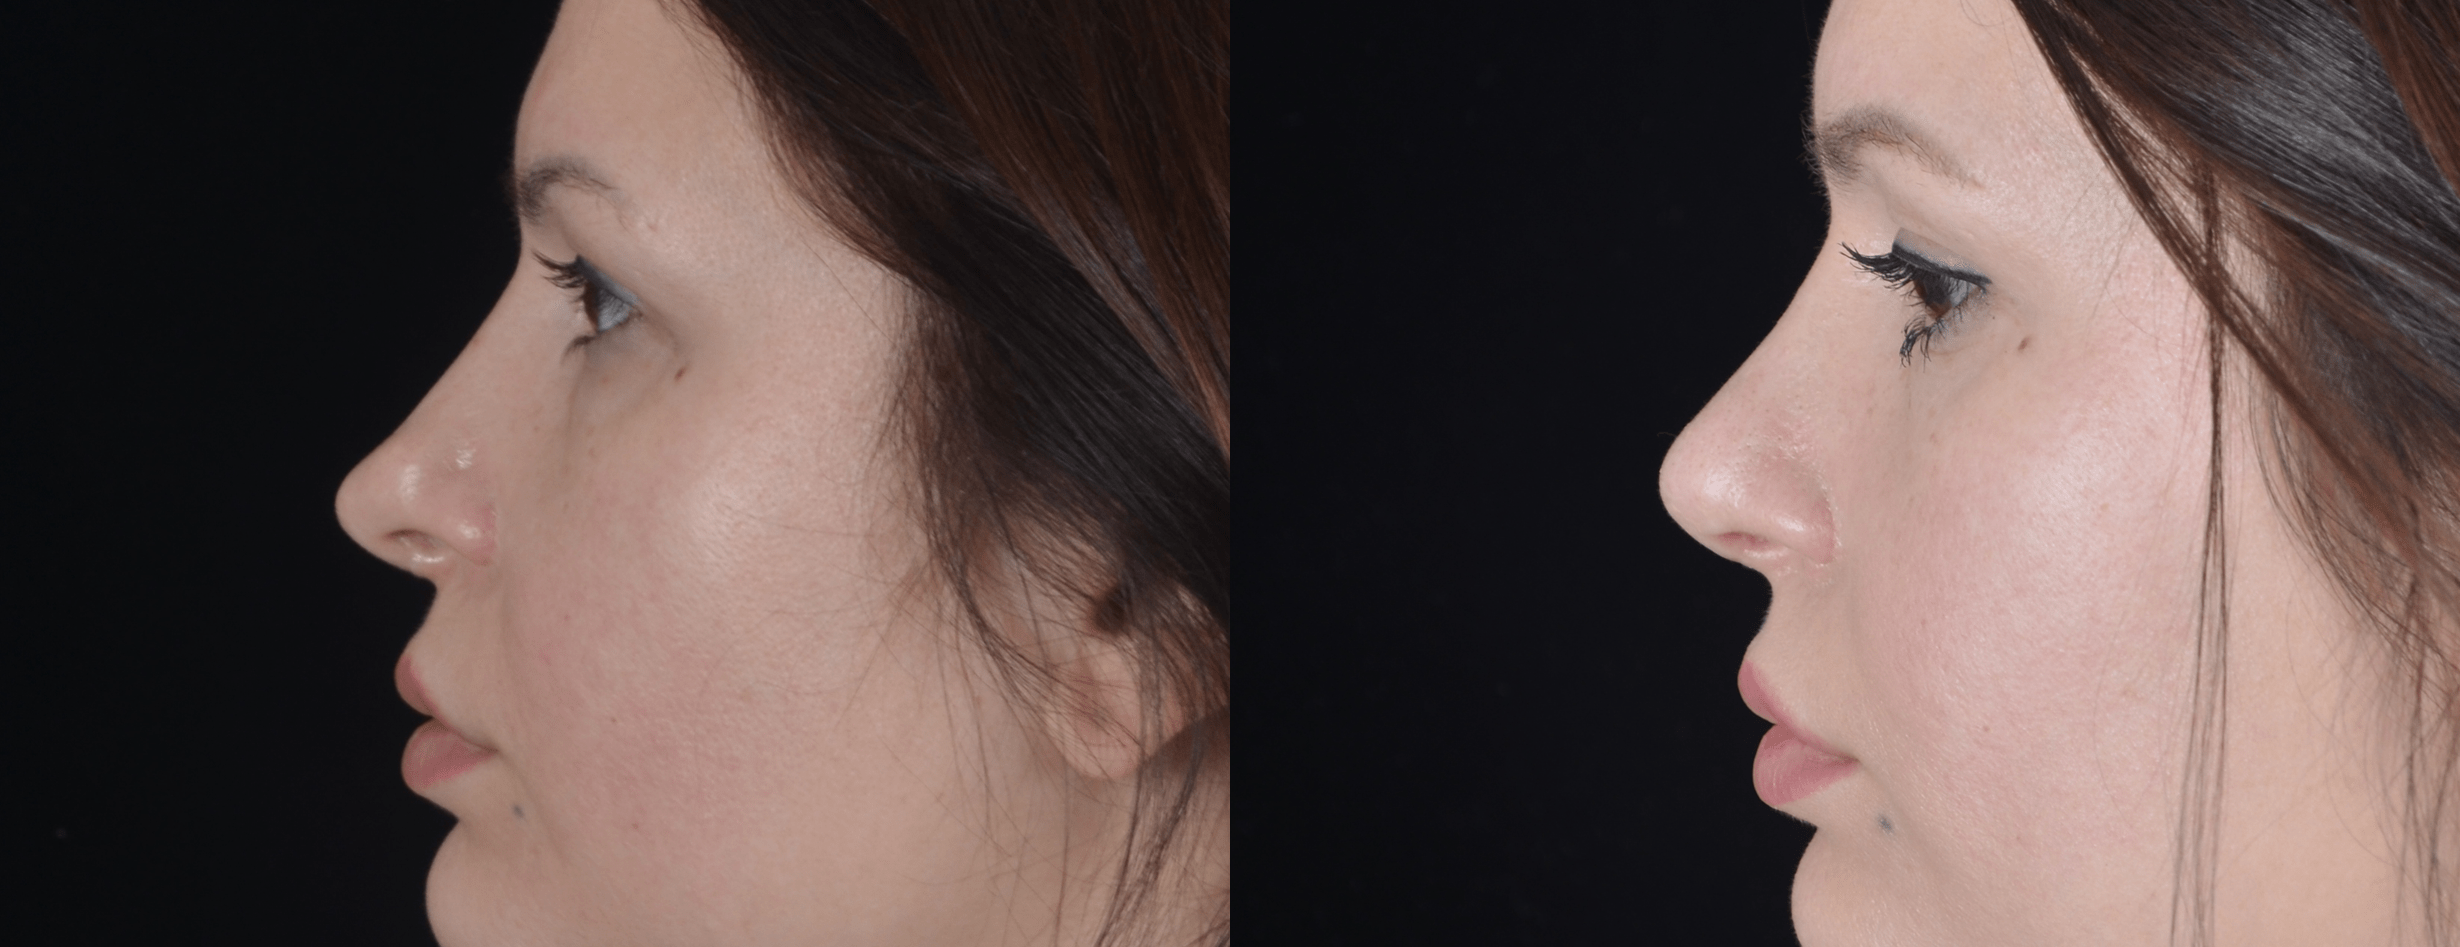 Вторичная ринопластика кончика носа  фото до и после